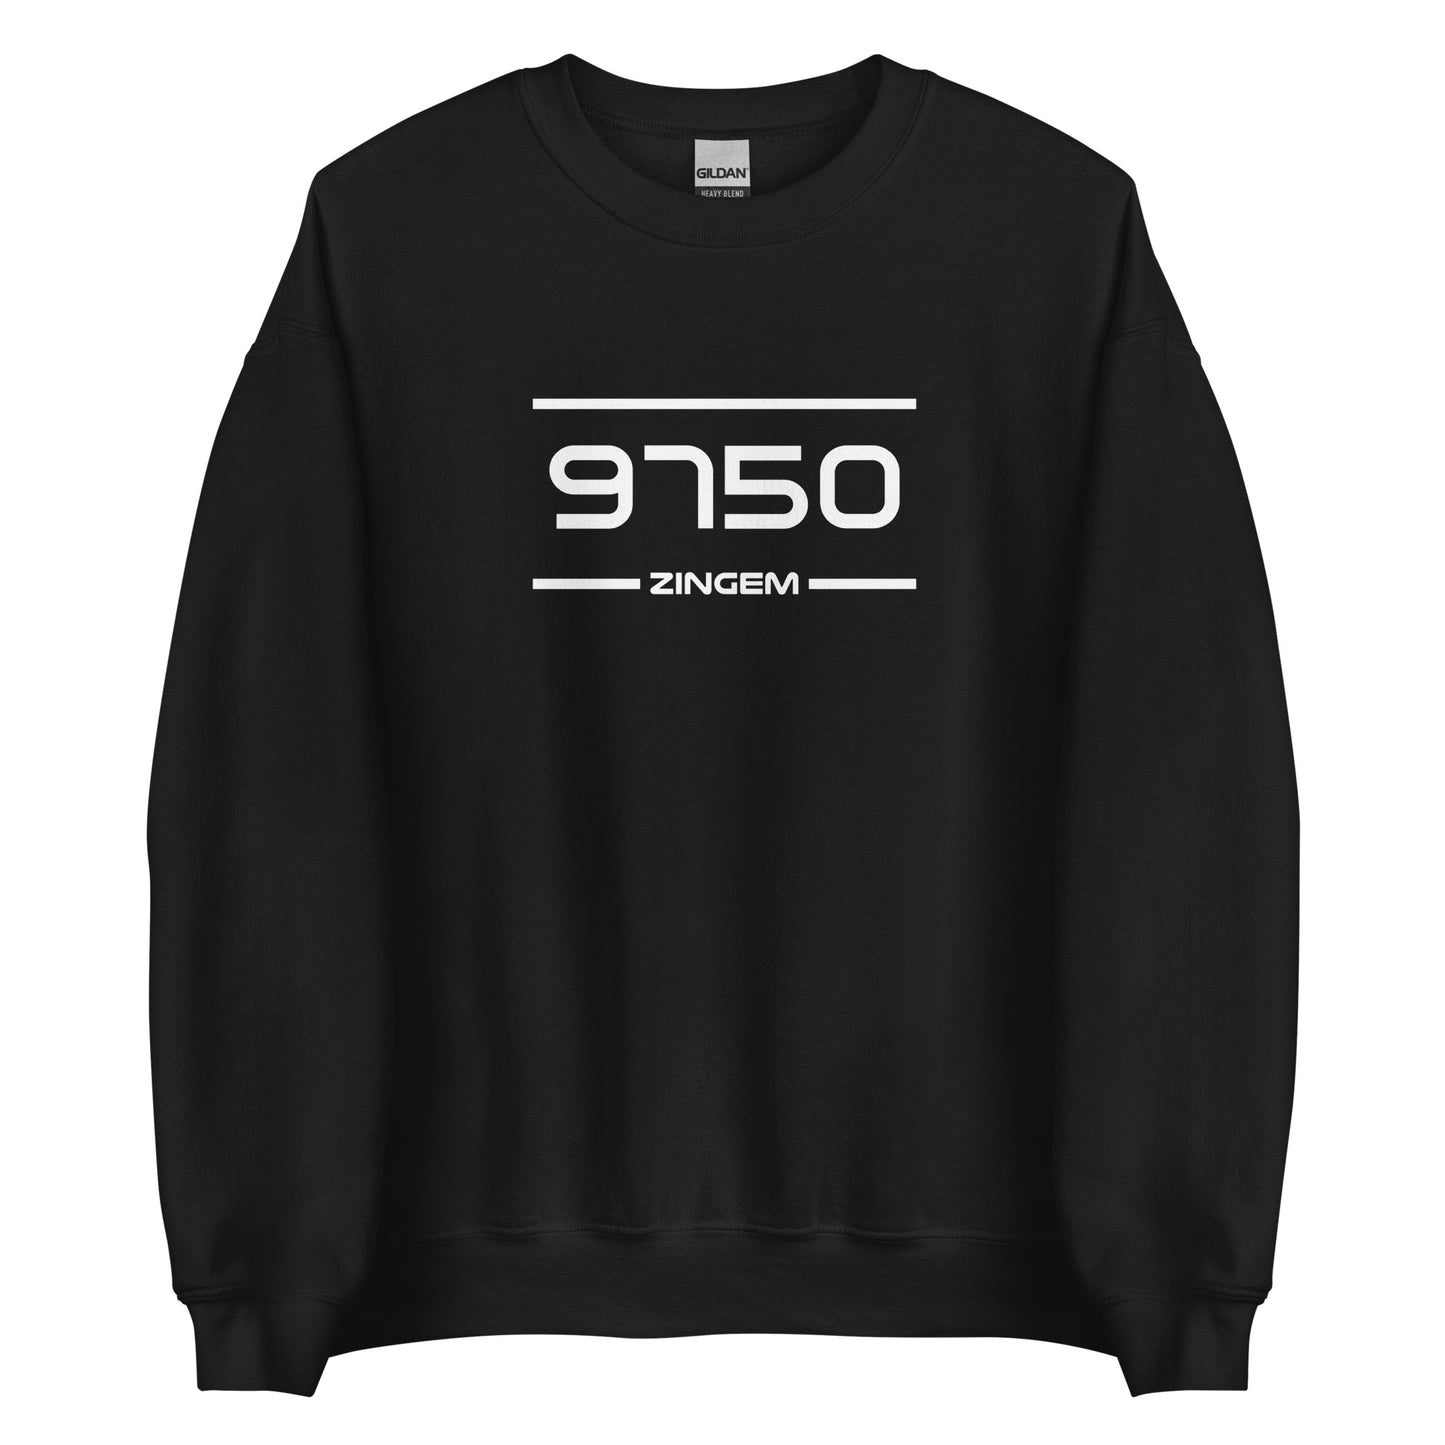 Sweater - 9750 - Zingem (M/V)